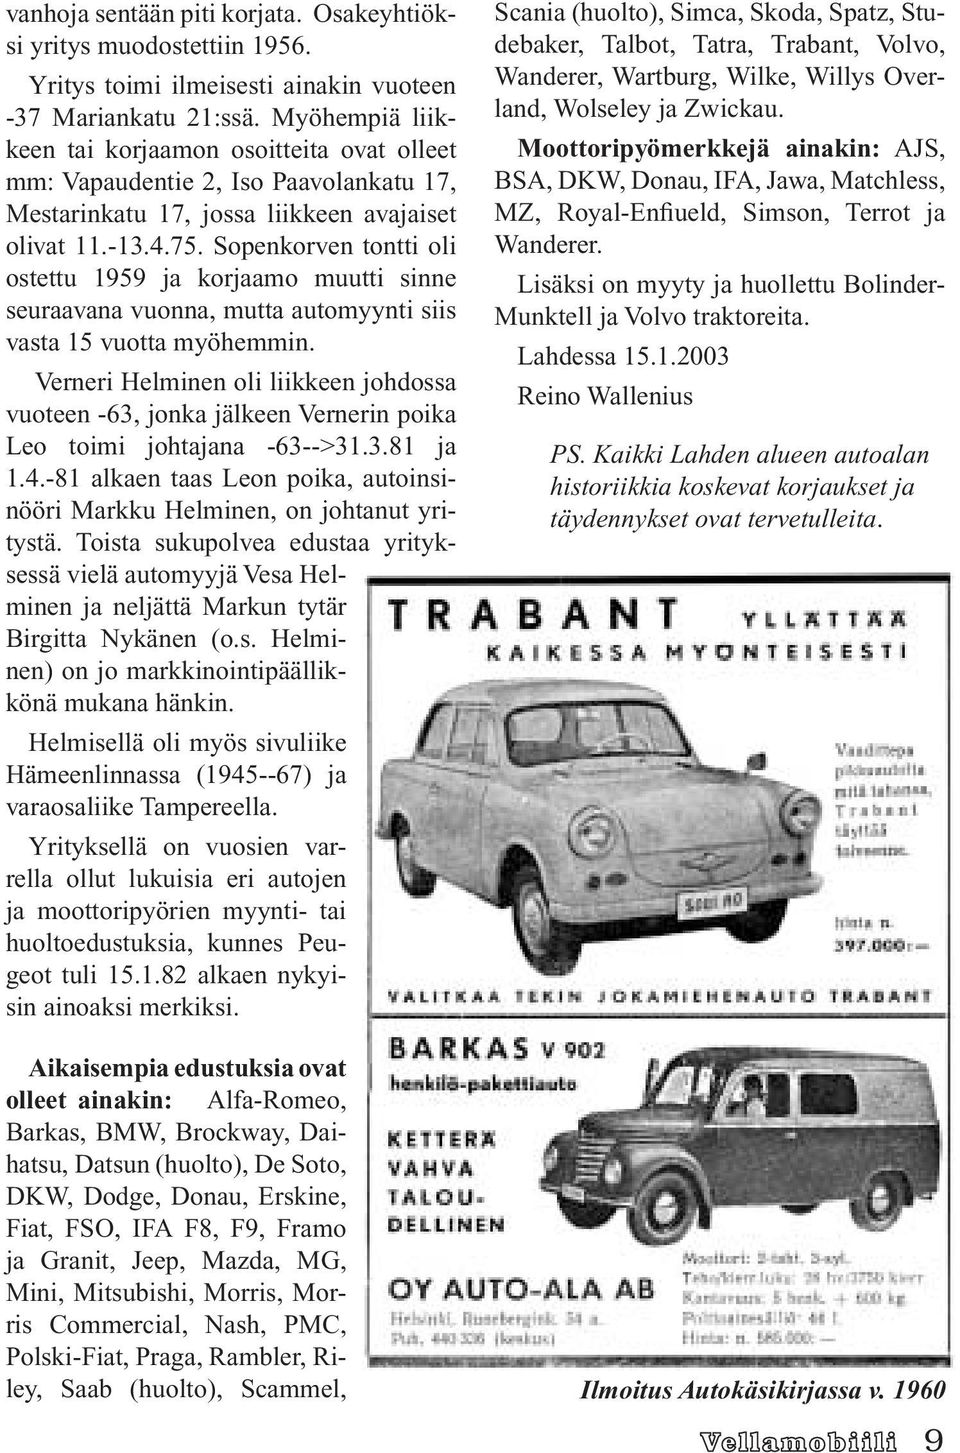 Sopenkorven tontti oli ostettu 1959 ja korjaamo muutti sinne seuraavana vuonna, mutta automyynti siis vasta 15 vuotta myöhemmin.